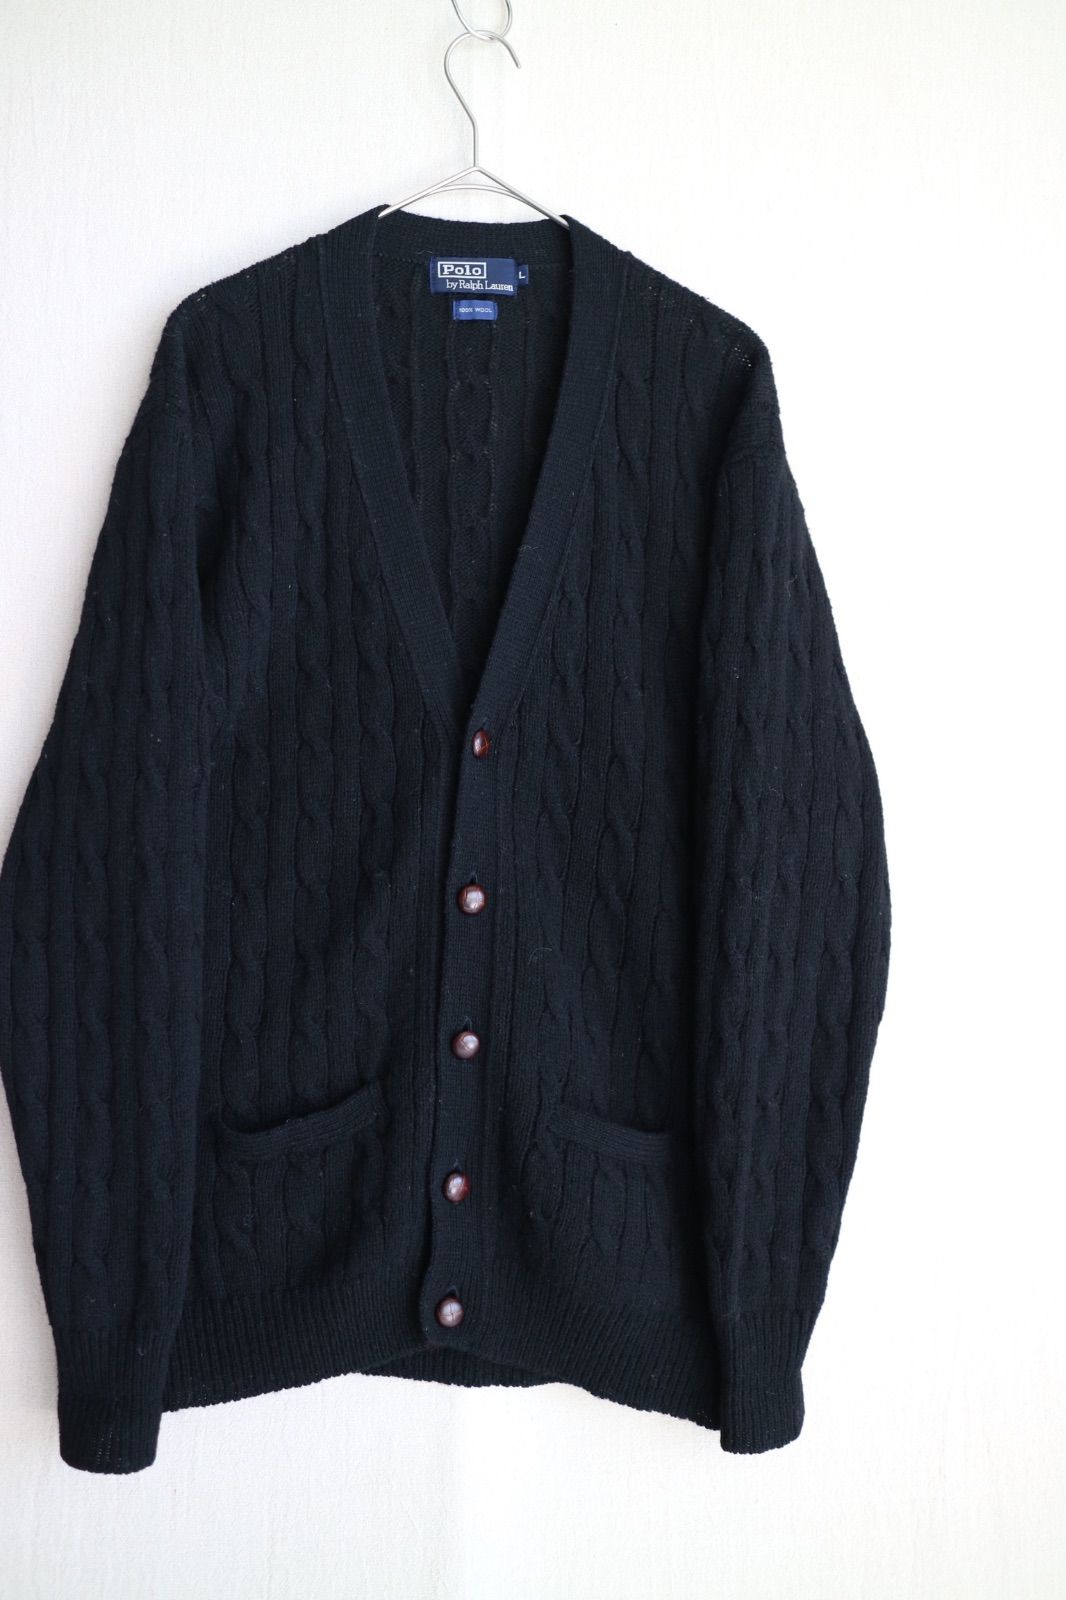 Polo Ralph Lauren ウール ニット カーディガン / L ブラック セーター 